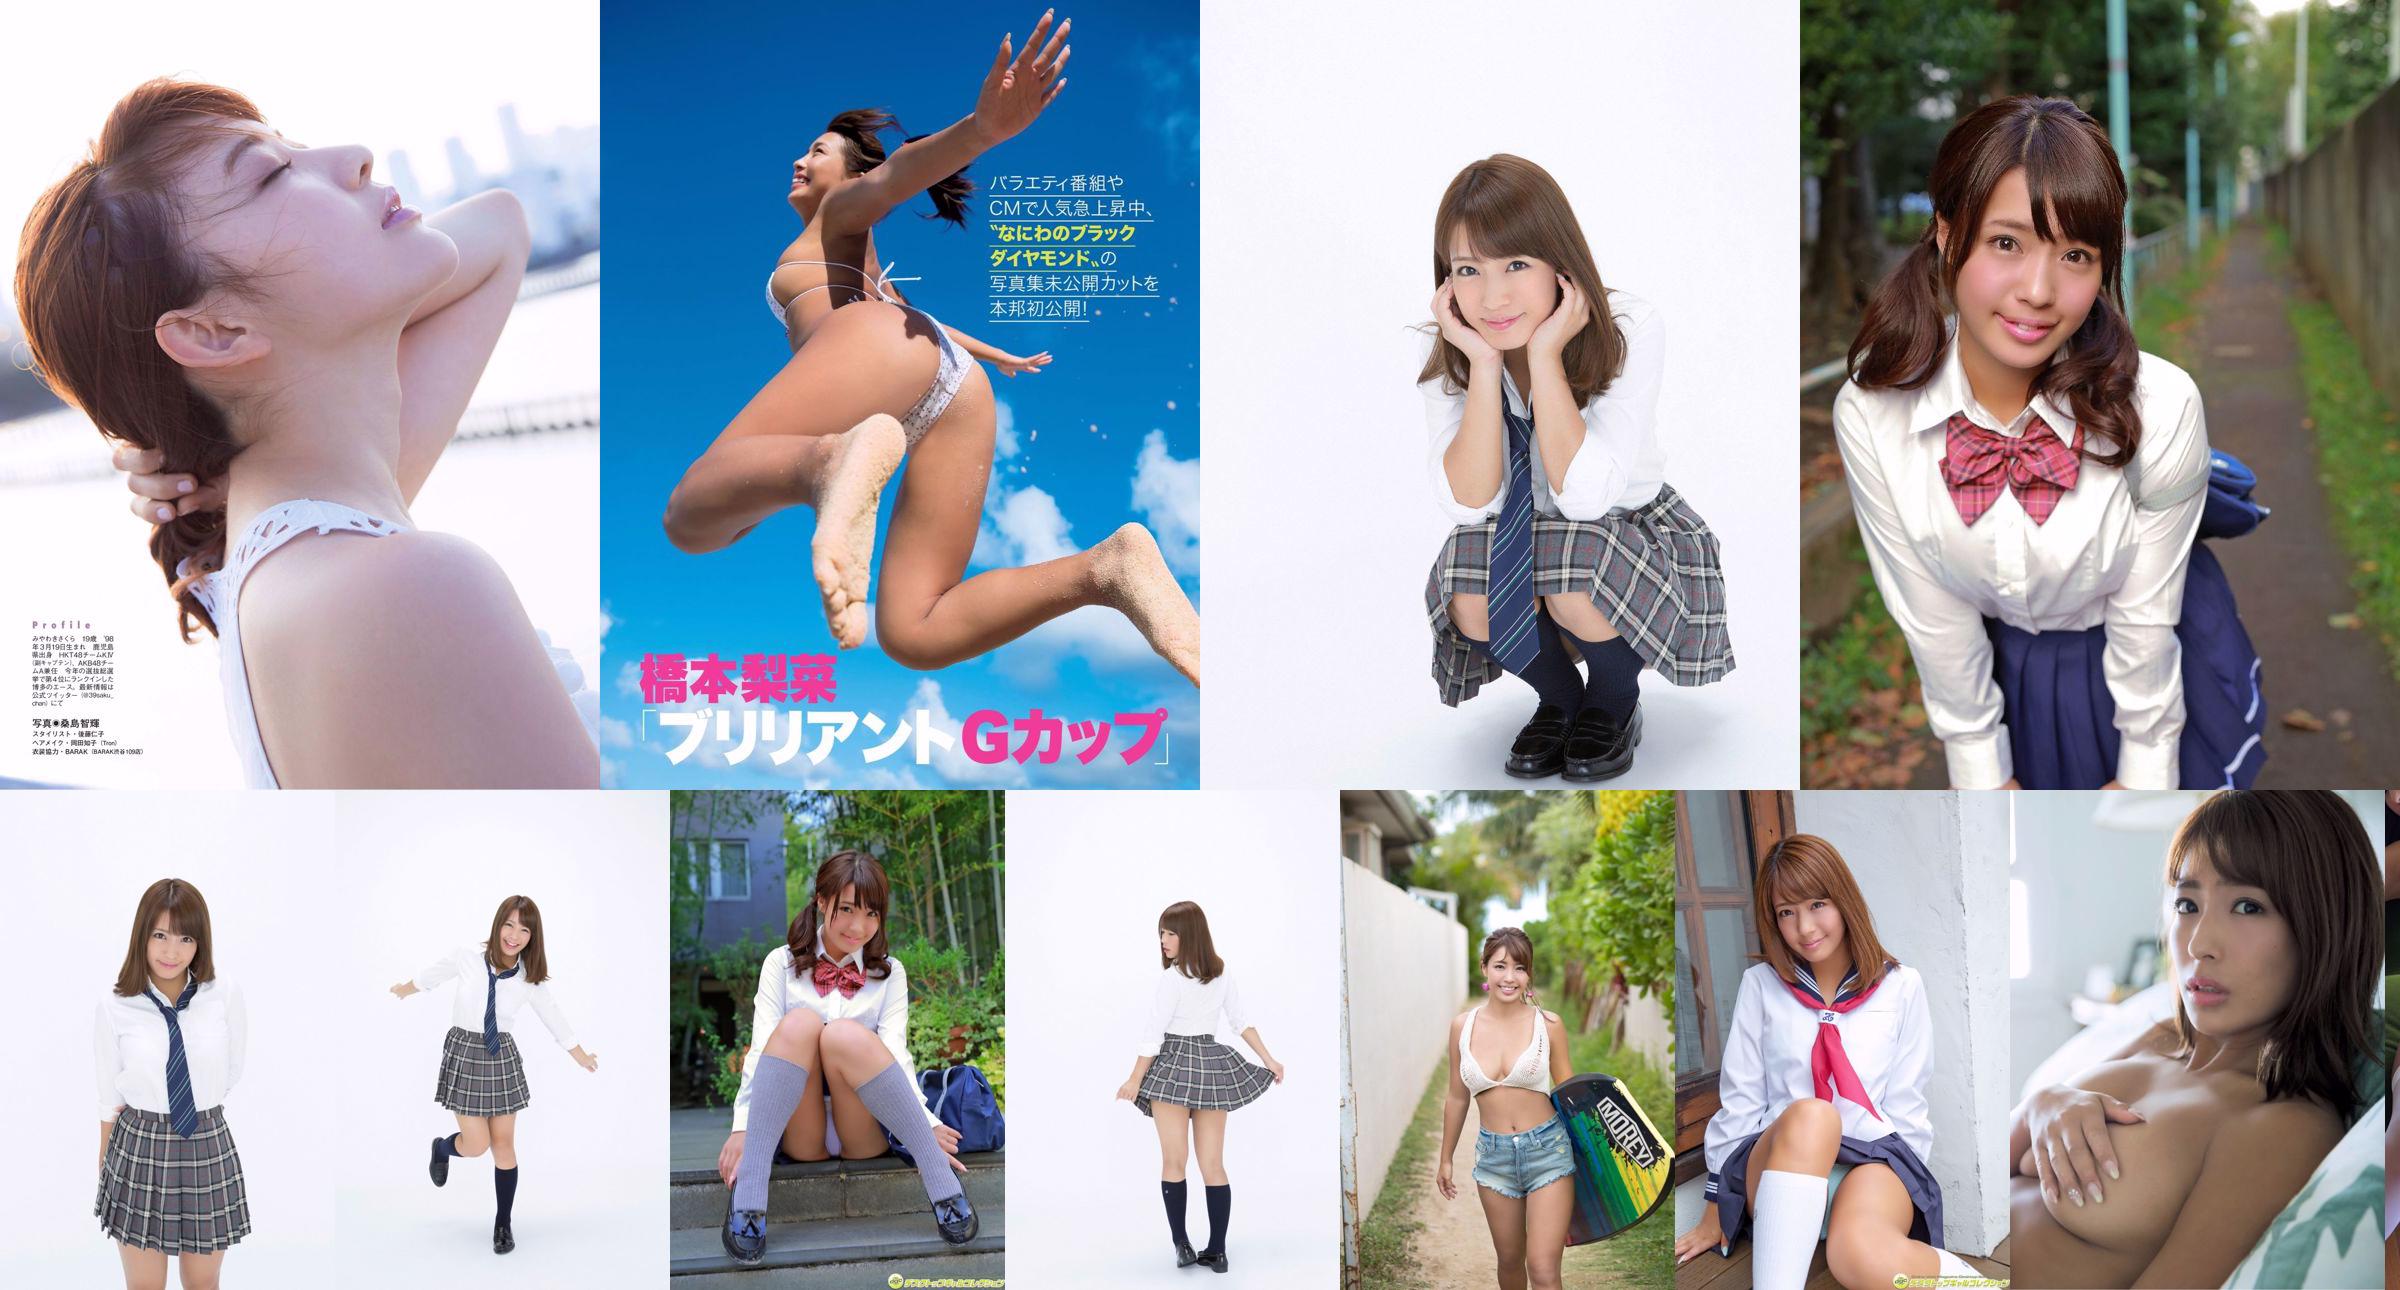 Rina Hashimoto << Crescente popularidade com o corpo gordo da taça G de pele escura >> [DGC] NO.1329 No.ea6165 Página 1